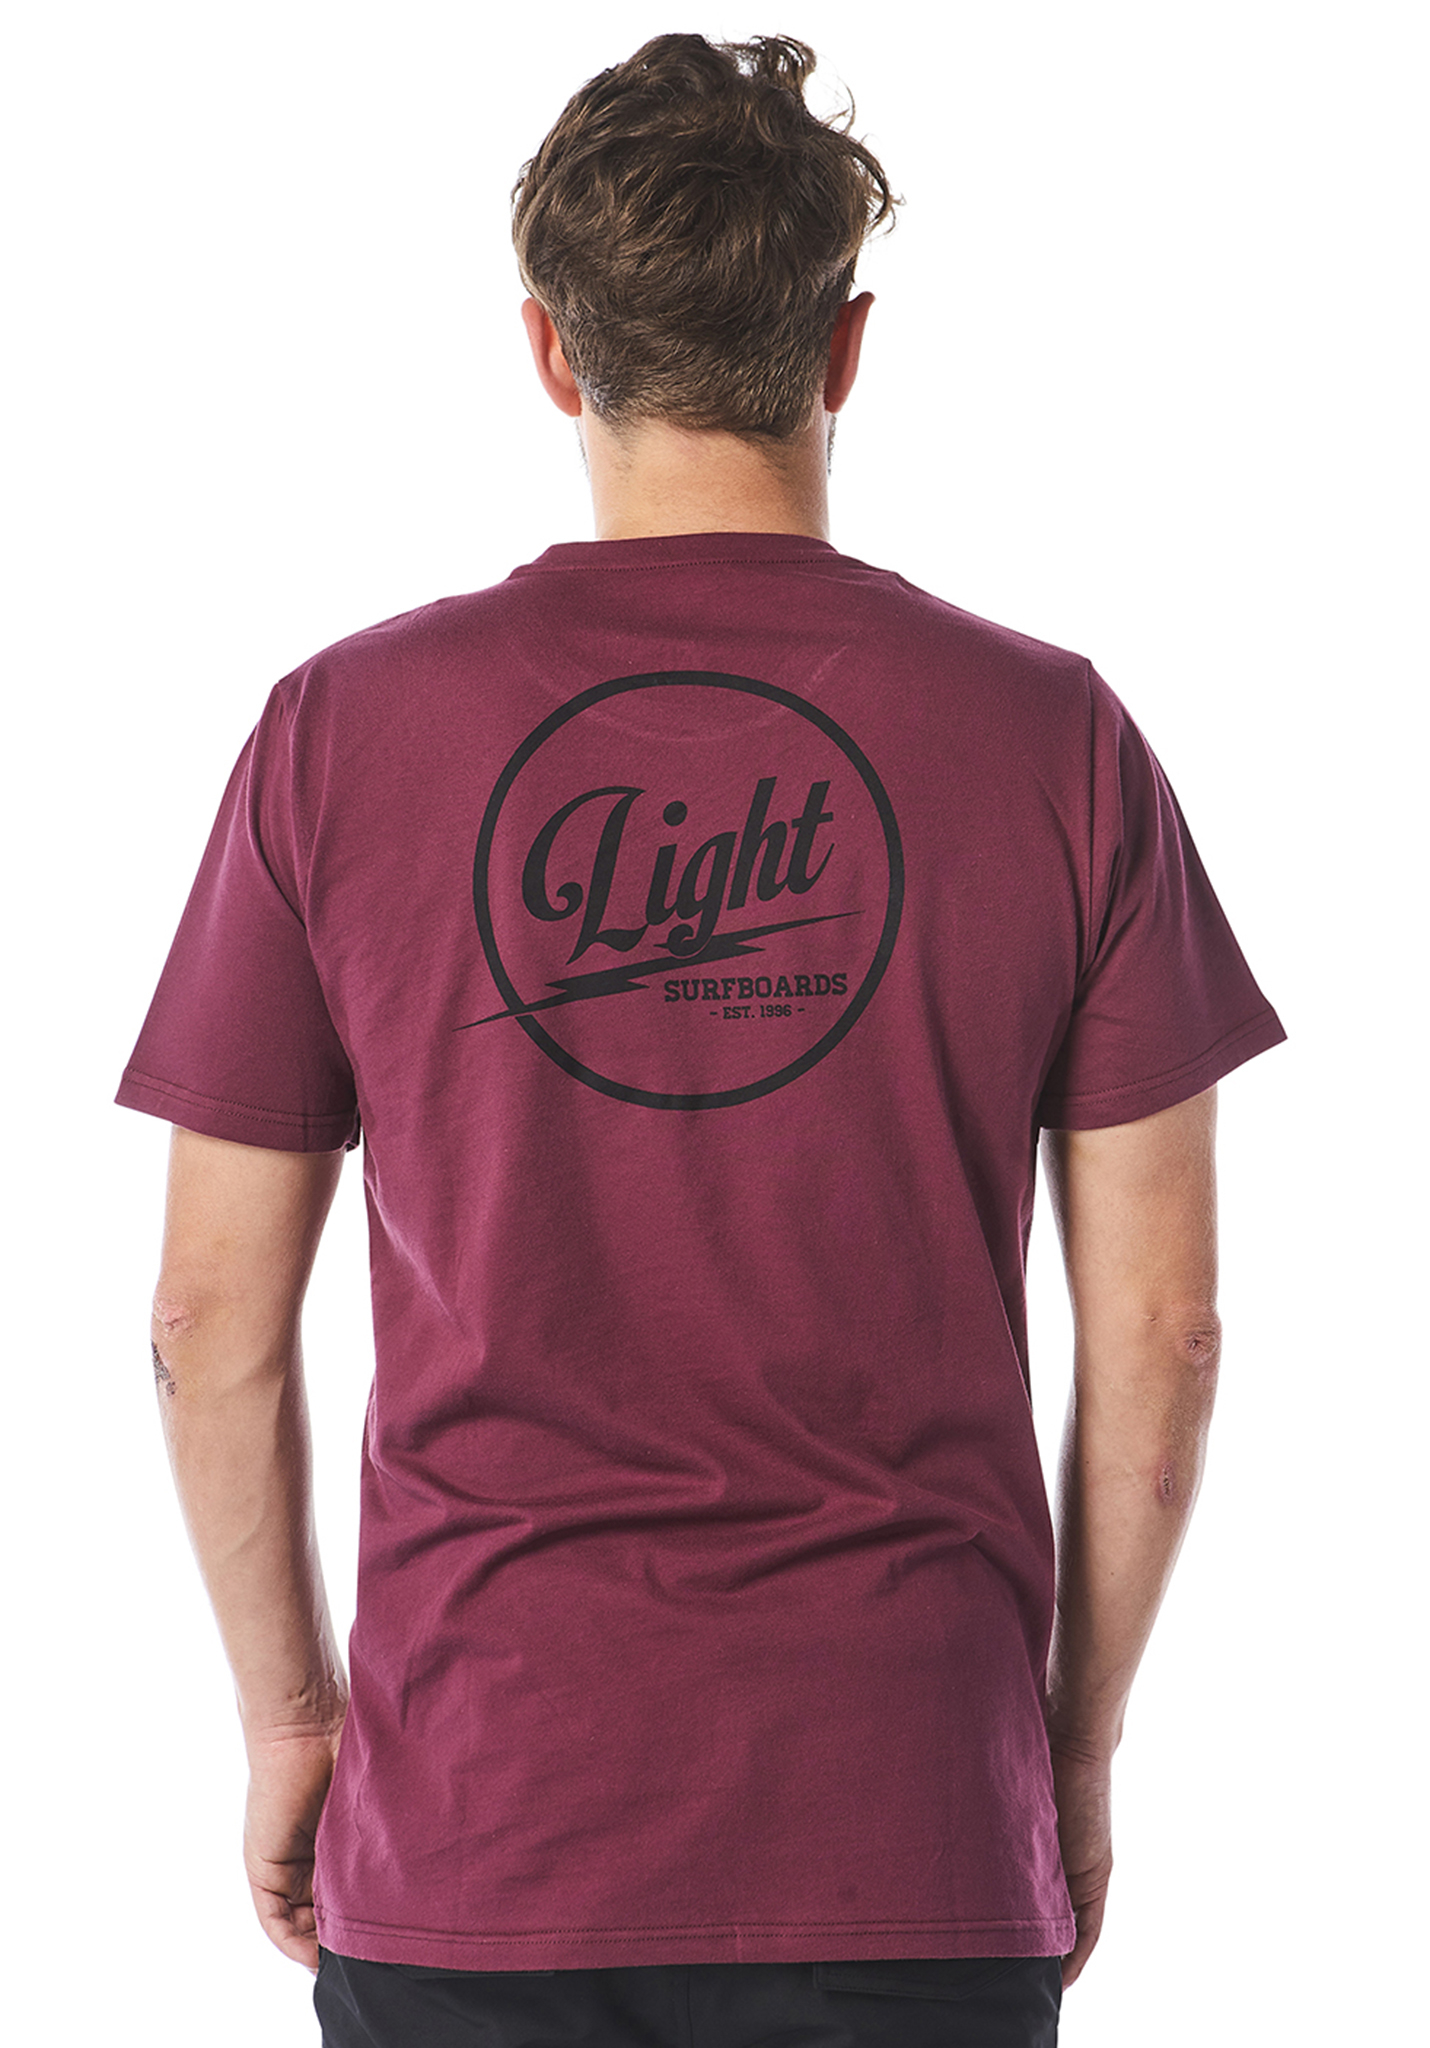 LIGHT Boards 19 T-Shirt burgundy XL